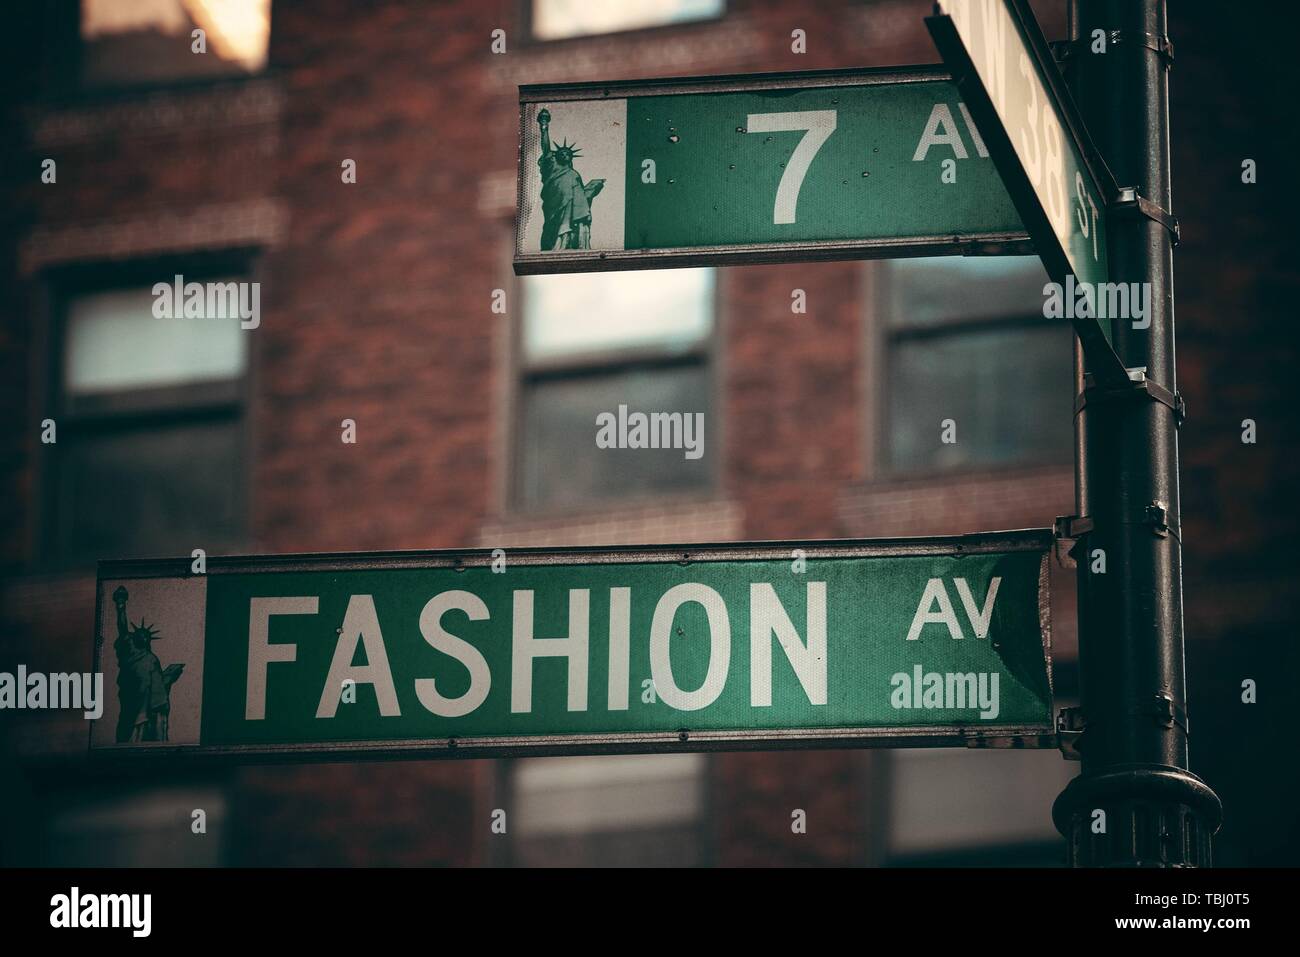 NEW YORK CITY - 19 février : avenue de la mode Street View le 19 février 2014 à Manhattan, New York City. Avec une population de 8,4 millions de dollars, c'est la ville la plus peuplée des États-Unis. Banque D'Images